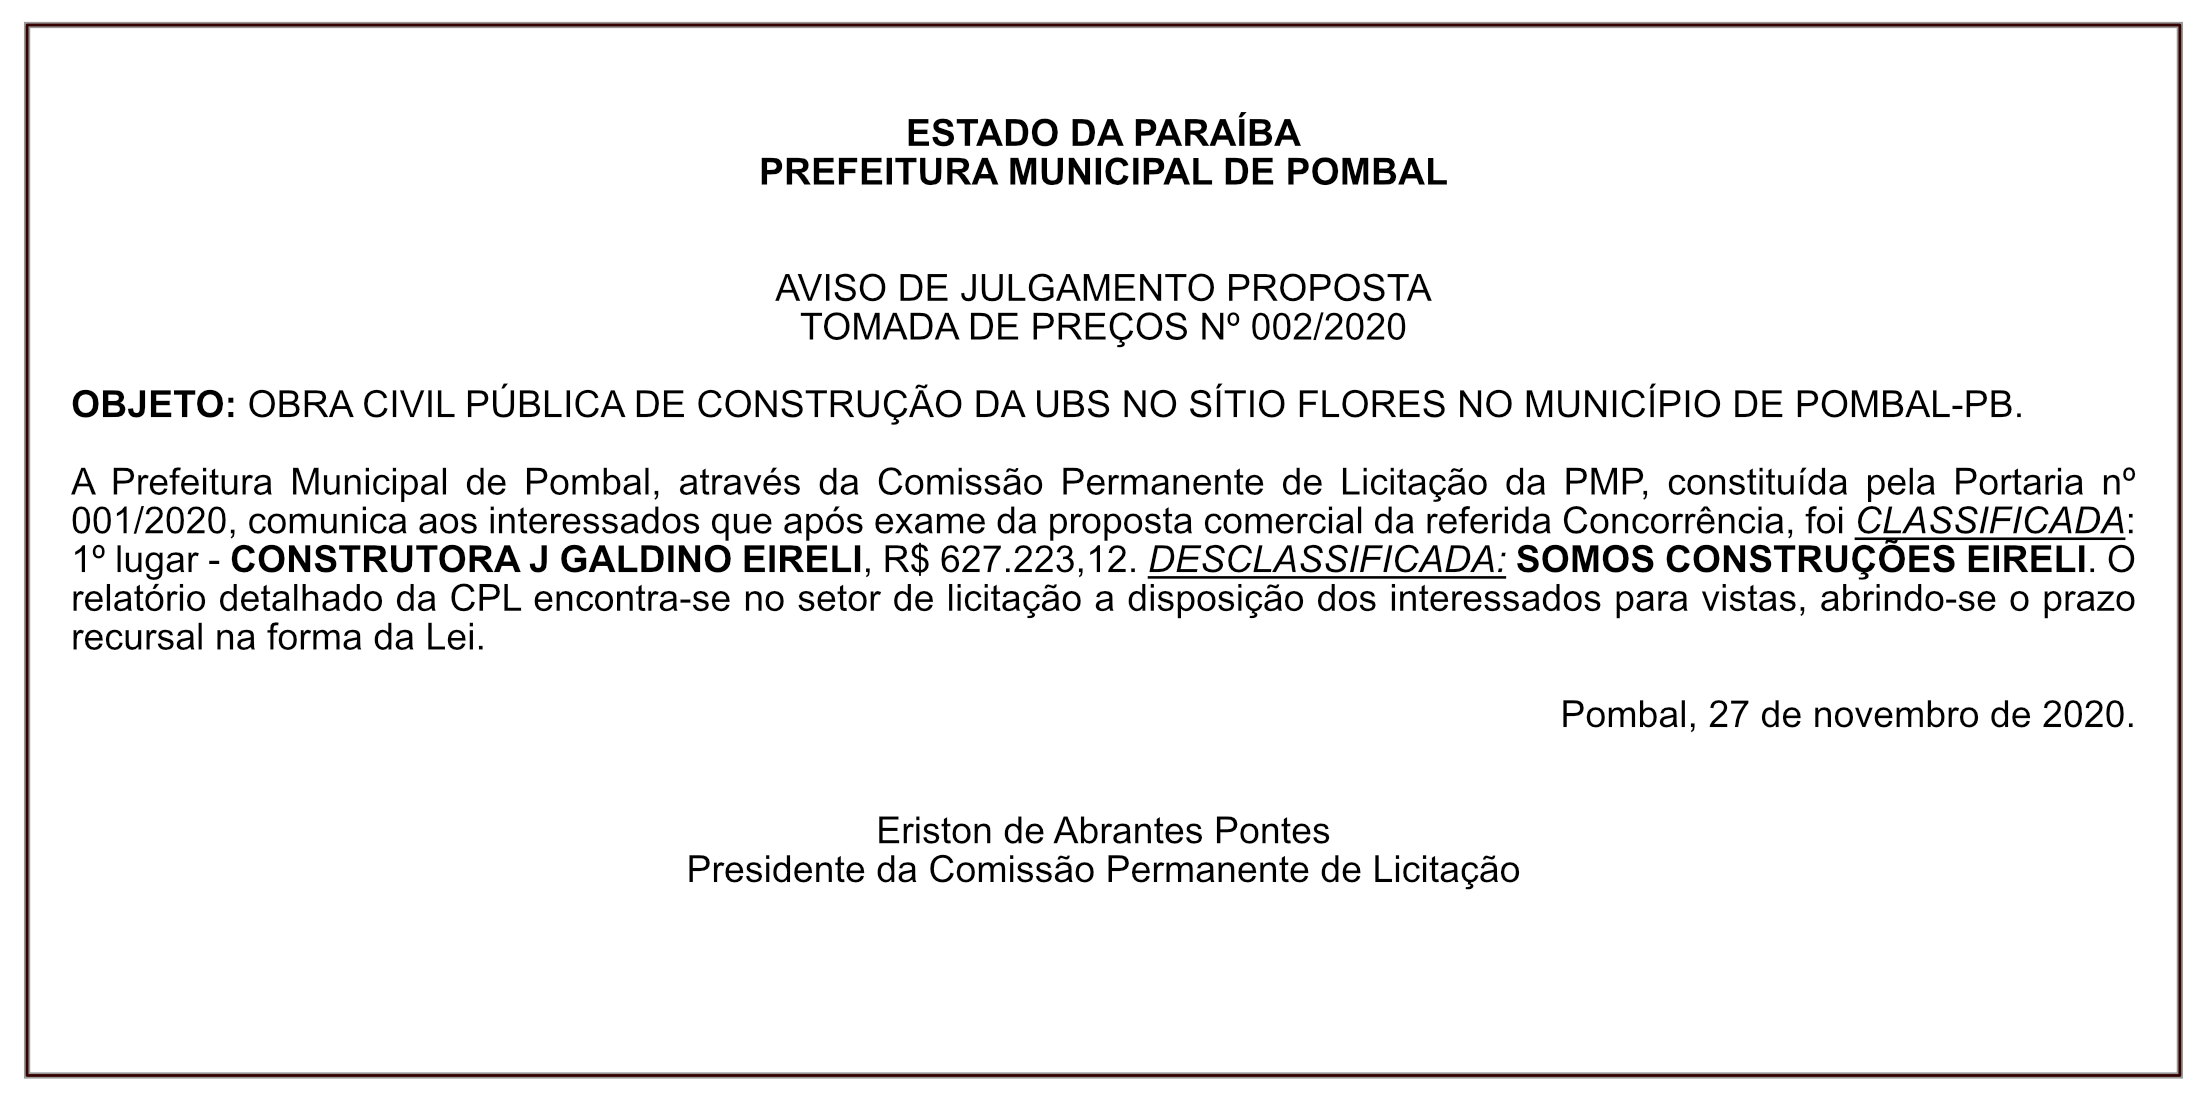 PREFEITURA MUNICIPAL DE POMBAL – AVISO DE JULGAMENTO PROPOSTA – TOMADA DE PREÇOS Nº 002/2020